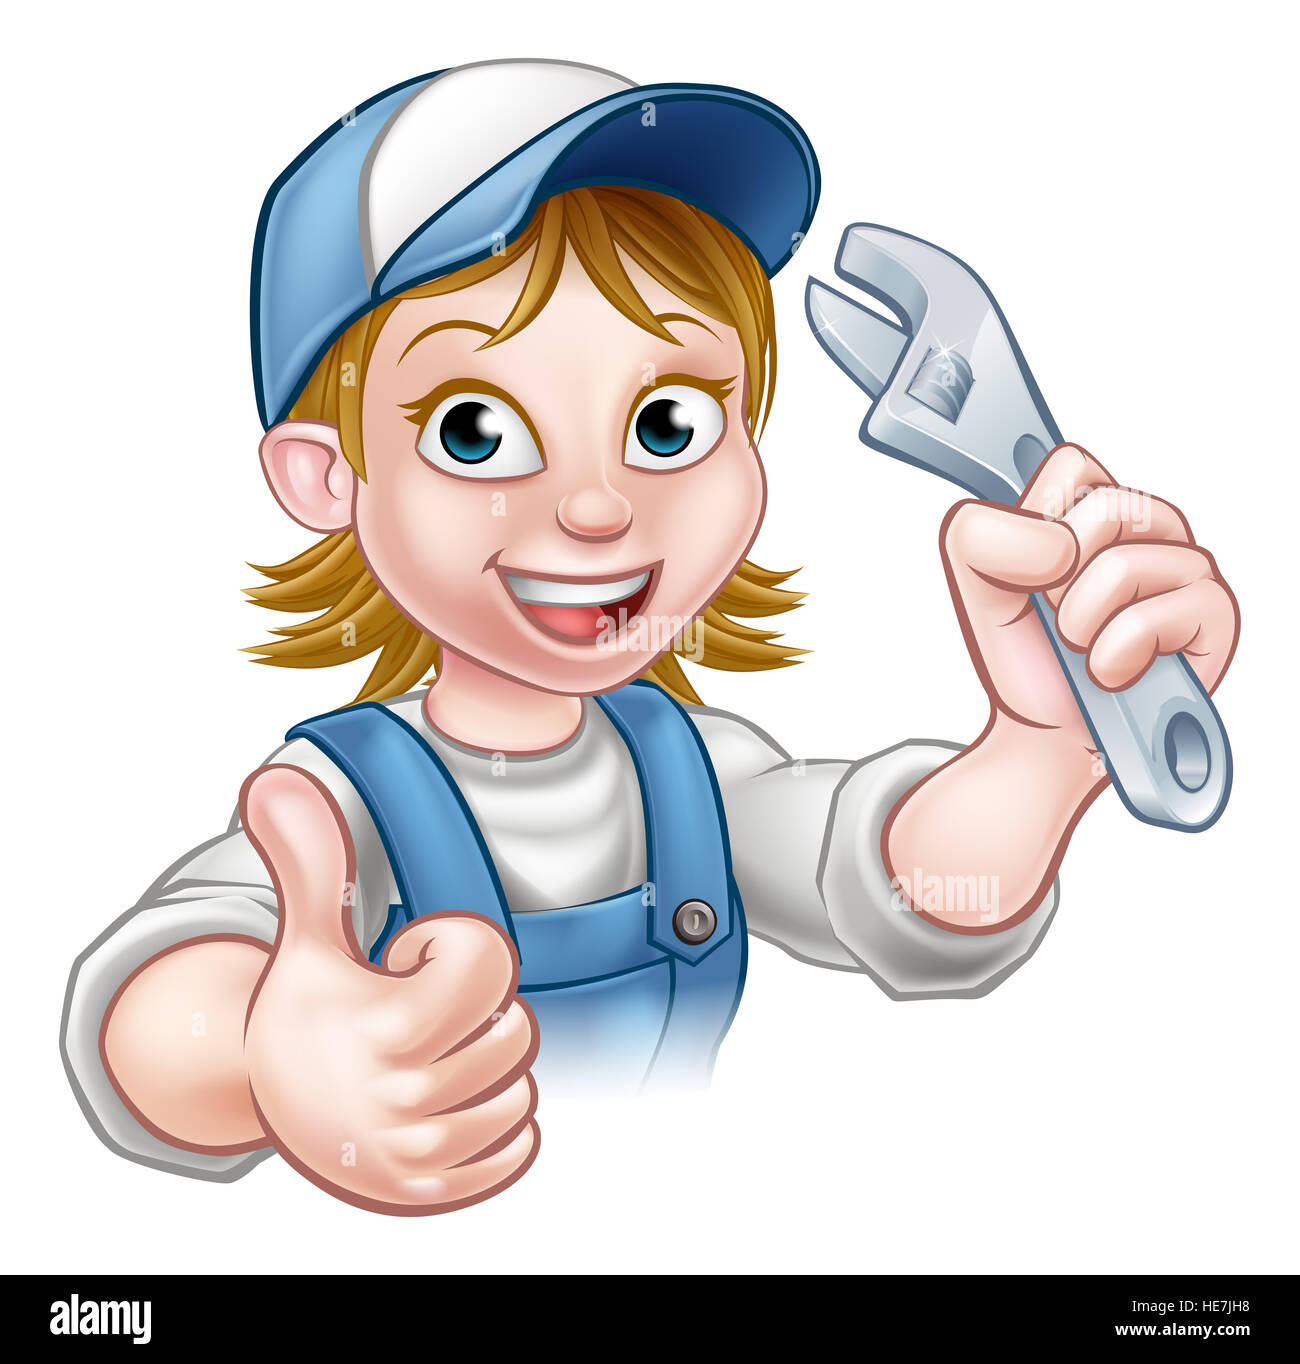 Un mécanicien ou plombier handyman personnage tenant une clé et de donner un coup de pouce Banque D'Images